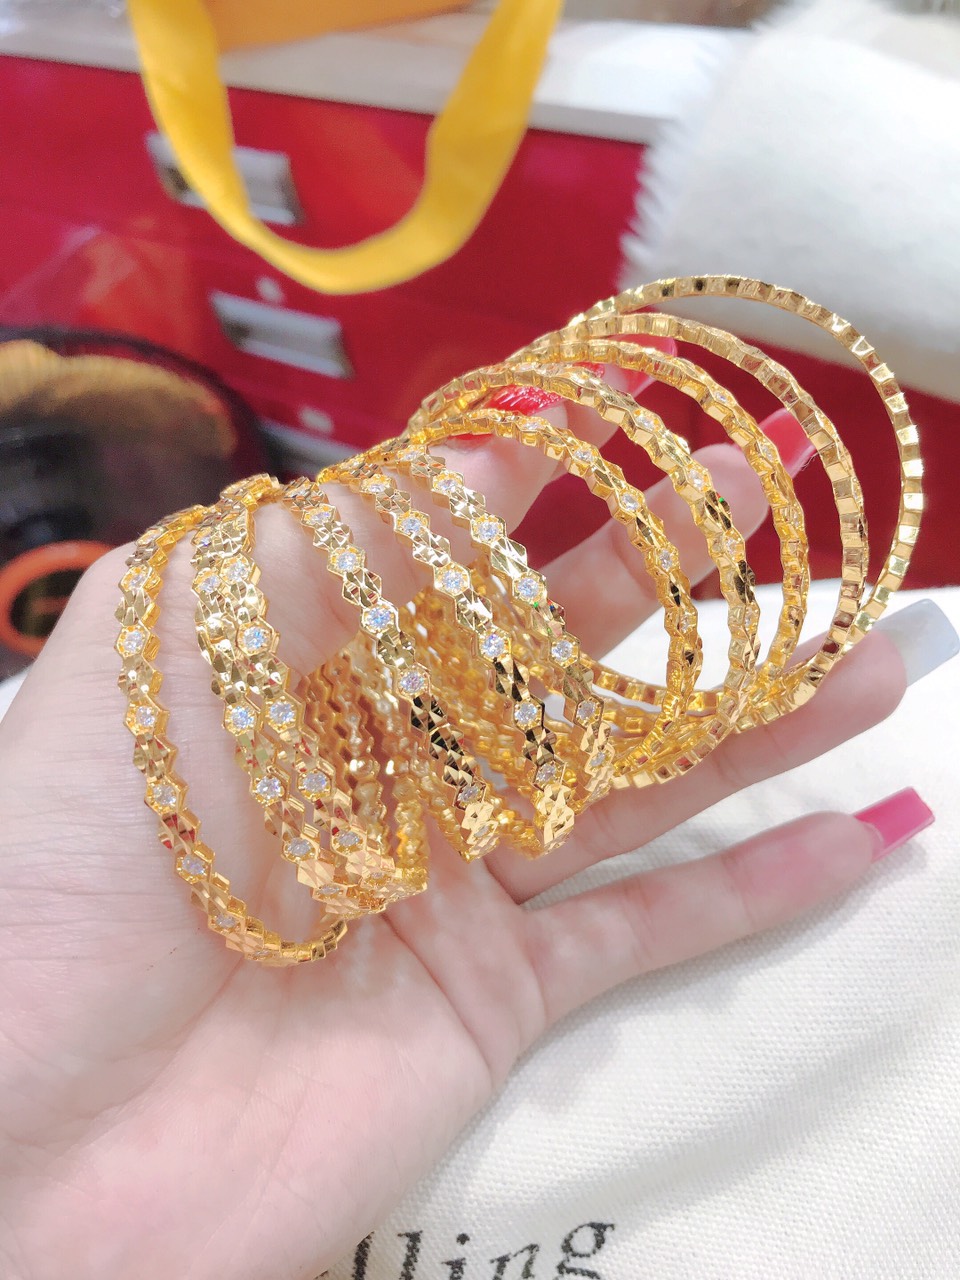 Lắc tay vàng nữ 18K 2019: Đây là mẫu lắc tay vàng nữ mới nhất năm 2019, với thiết kế độc đáo, tinh tế và đẳng cấp. Chất liệu vàng 18K cao cấp kết hợp với các đá quý tinh xảo mang đến vẻ ngoài thu hút và thanh thoát, tôn lên vẻ đẹp quý phái và tinh tế cho người đeo.